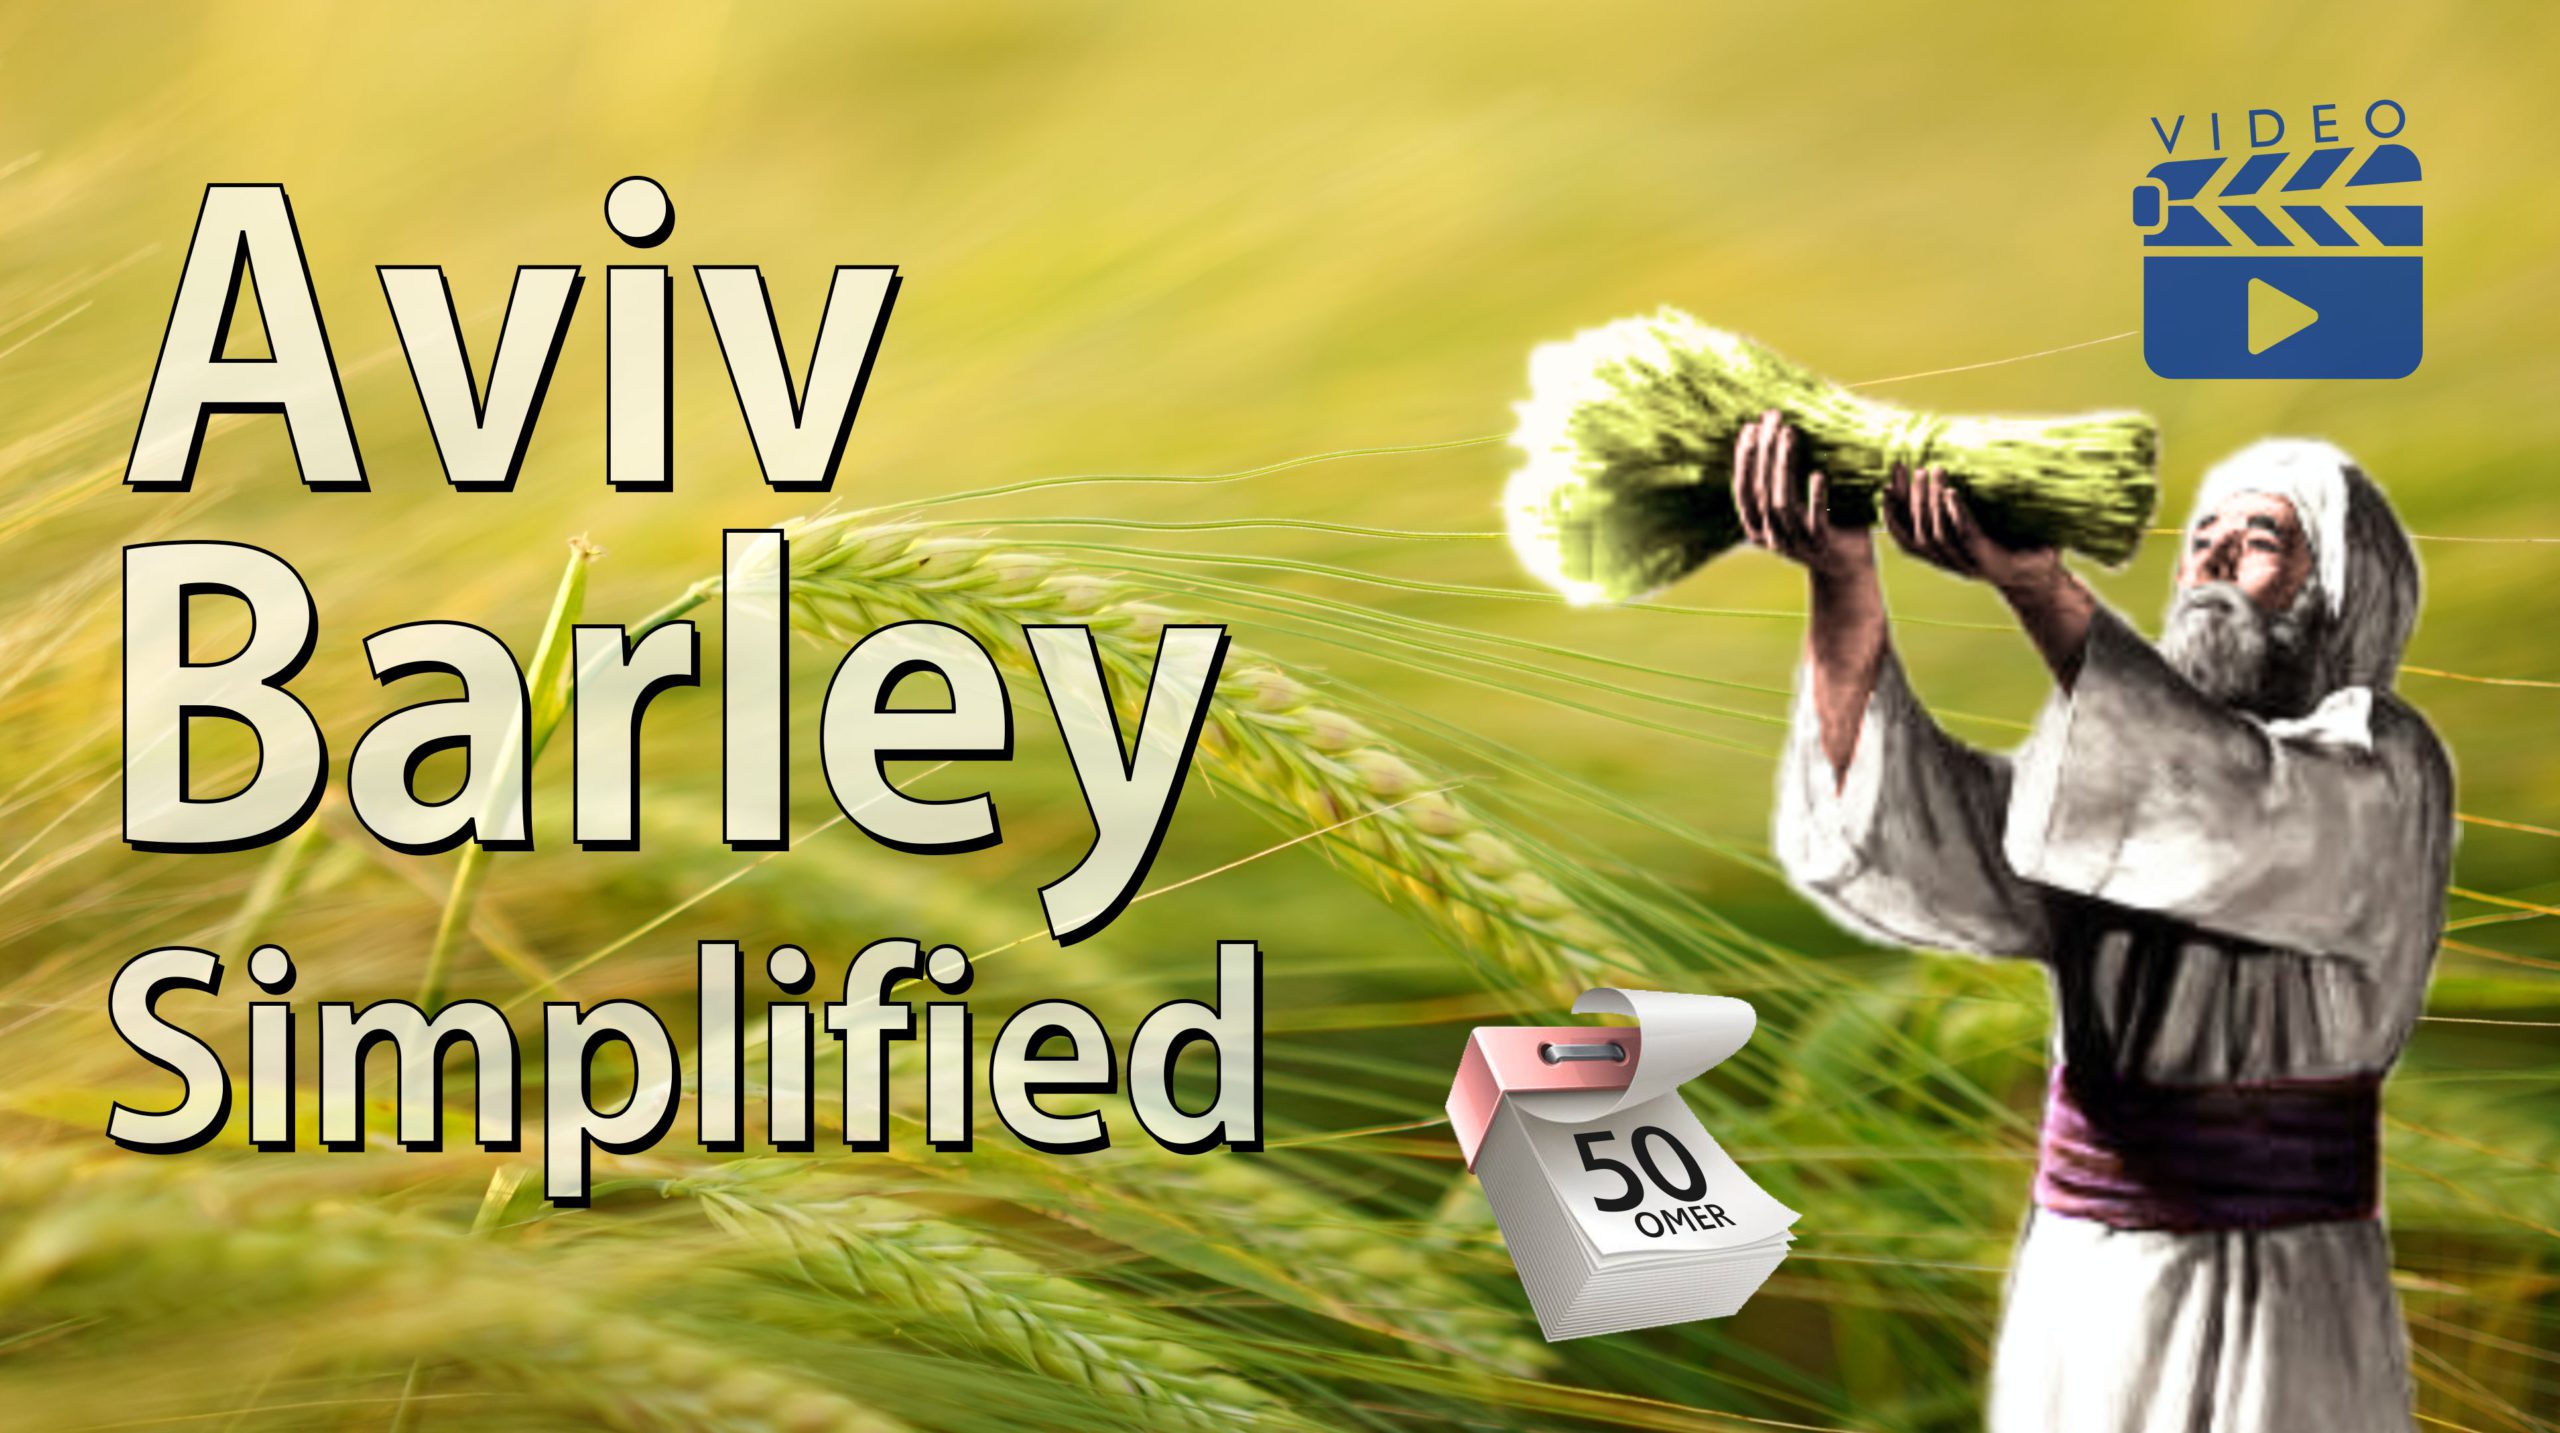 Aviv Barley Simplified